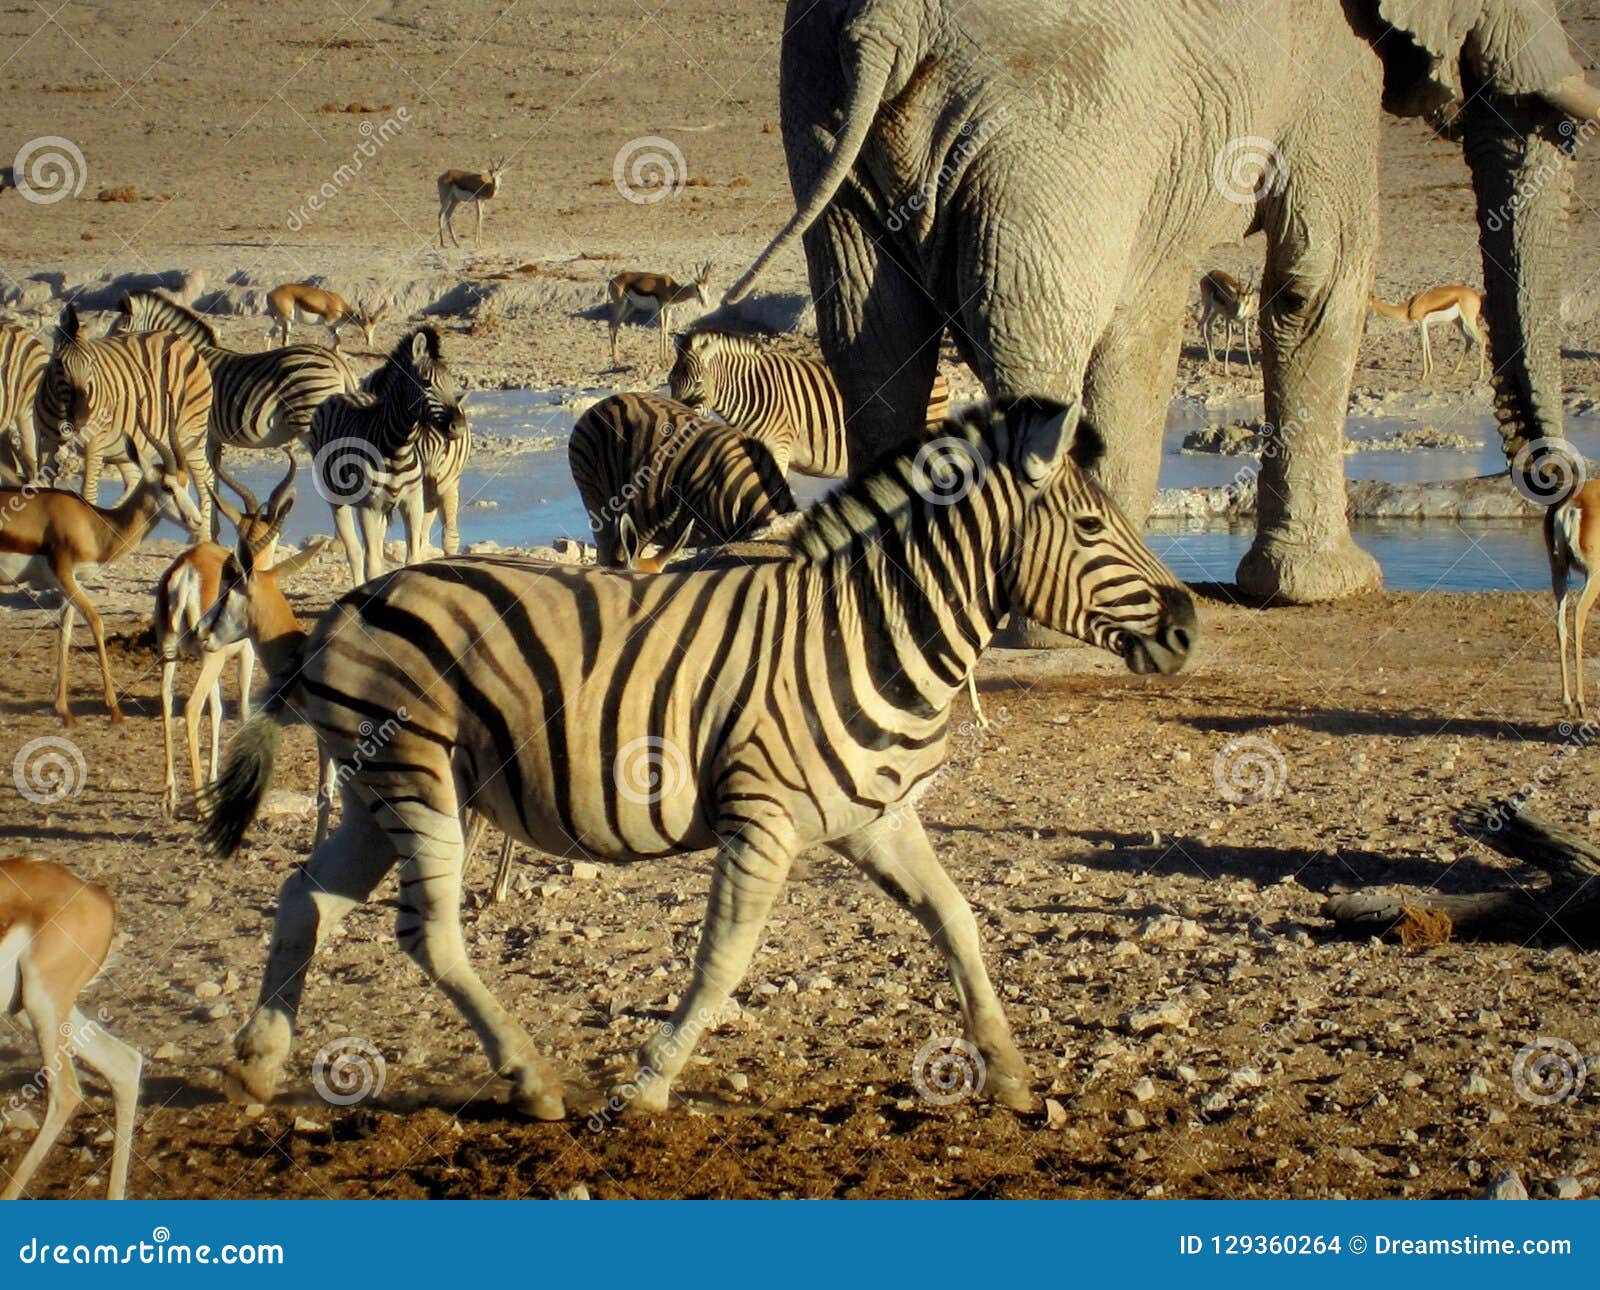 Namibia, Etosha Pan, Elephant and Other Animals Drinking Water with Zebra  in the Foreground Stock Photo - Image of etoshapan, oryx: 129360264